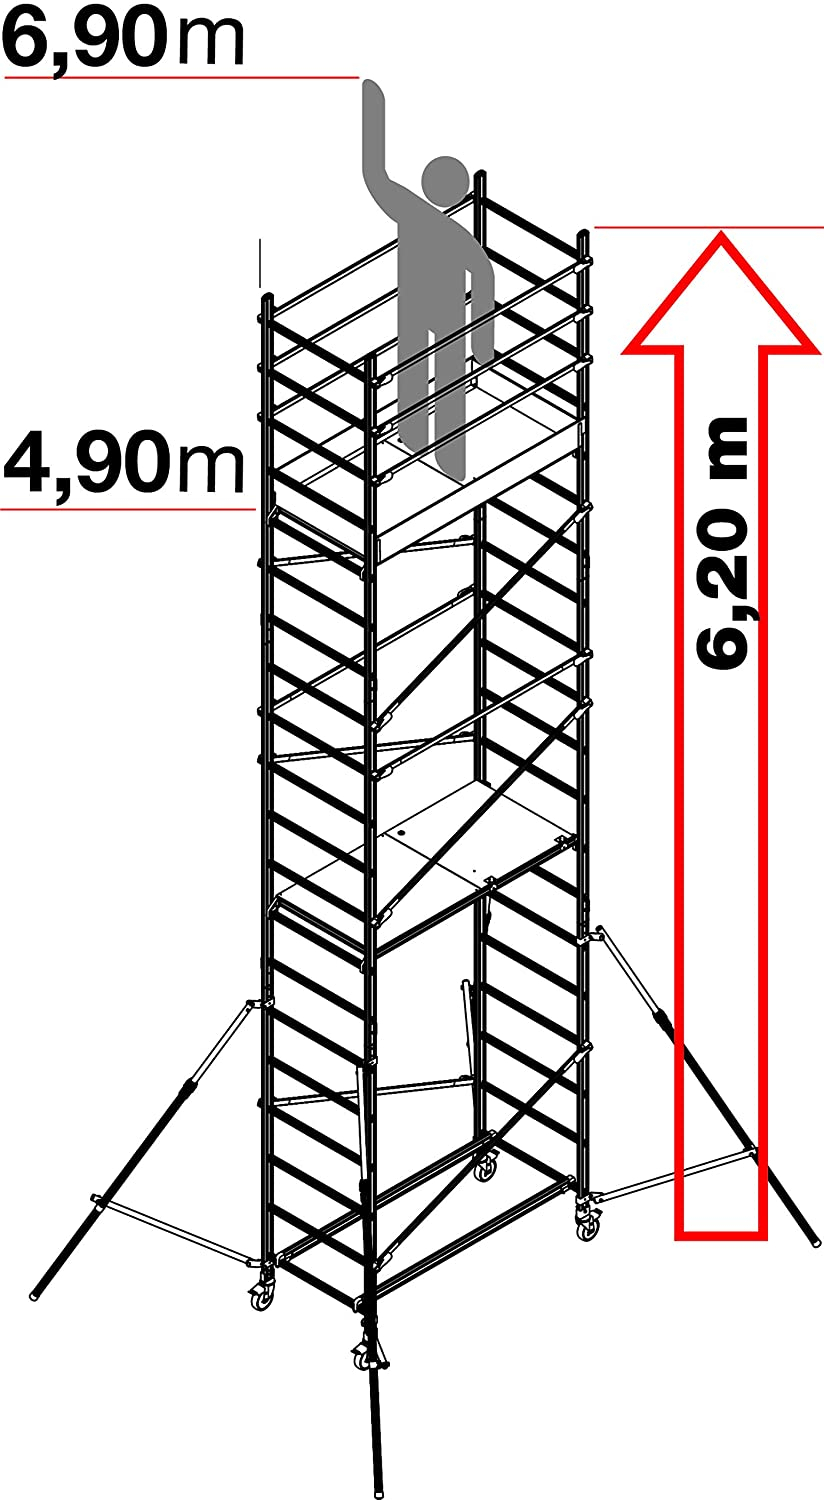 Fahrgerüst "Alto" S100, 3 m Arbeitshöhe